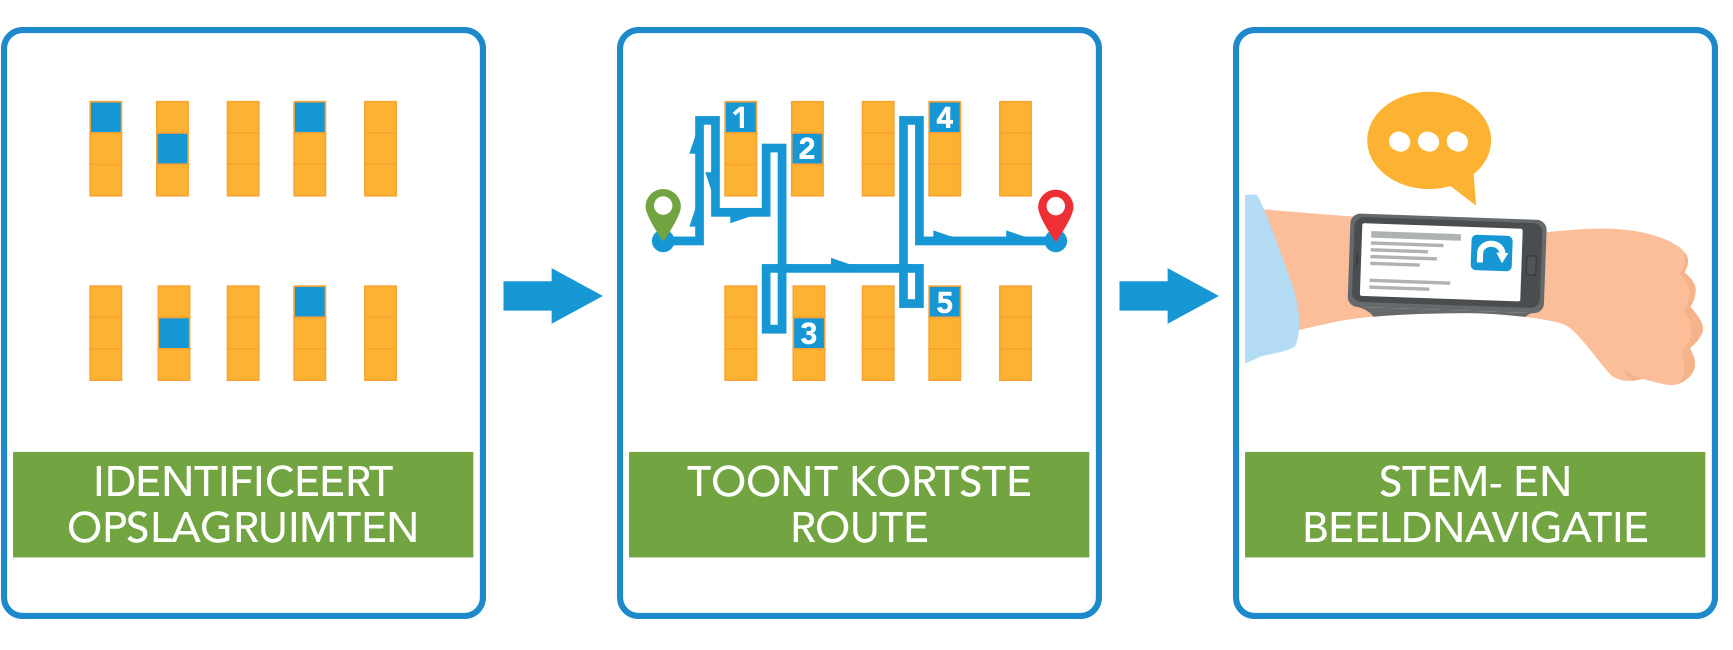 Identificeert opslagruimten > Toont kortste route > Stem- en beeldnavigatie